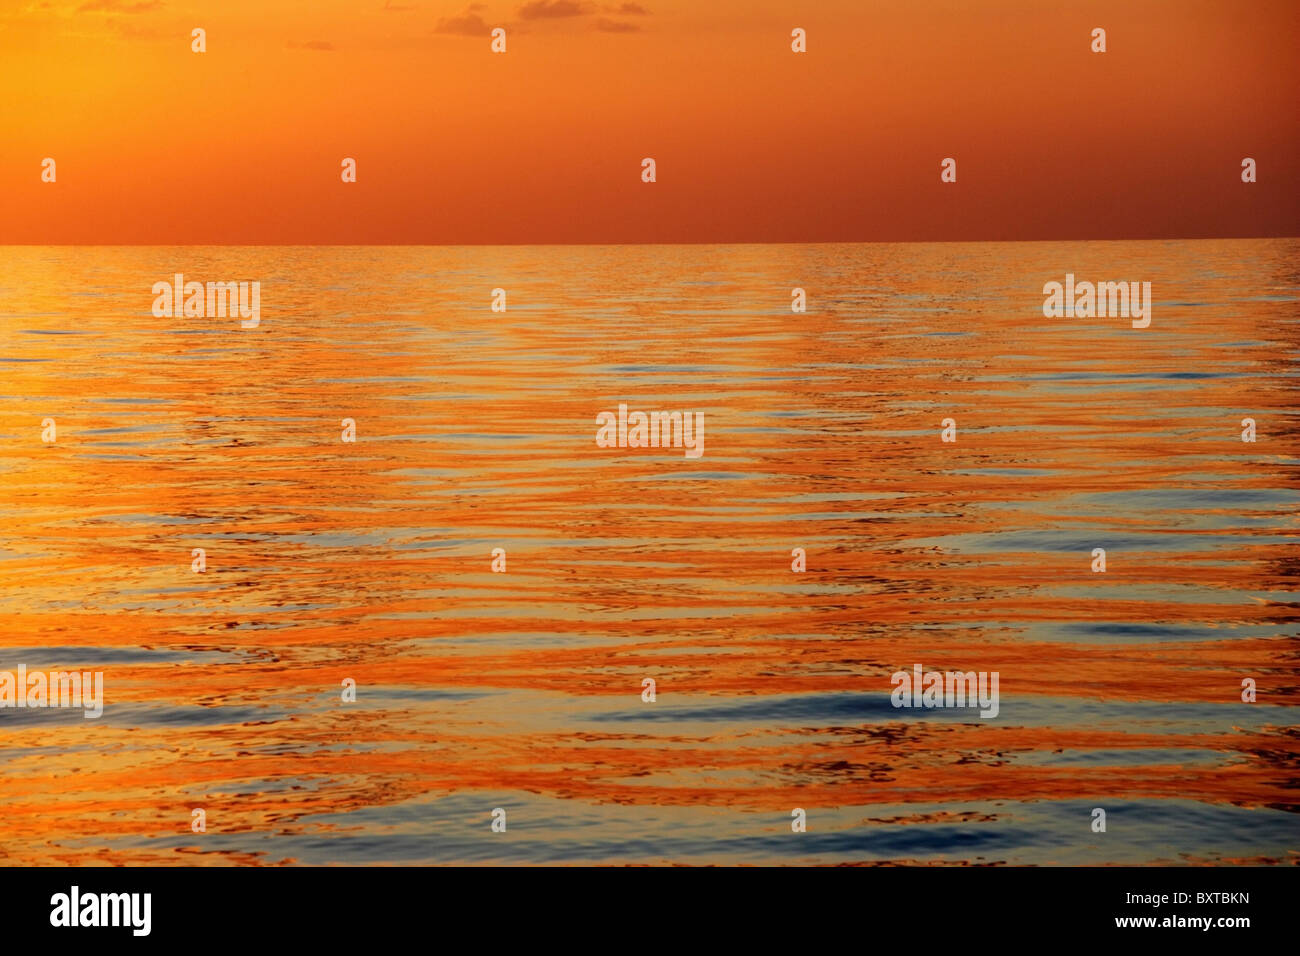 Mare calmo con superficie arancione tramonto a basso angolo di visione Foto Stock